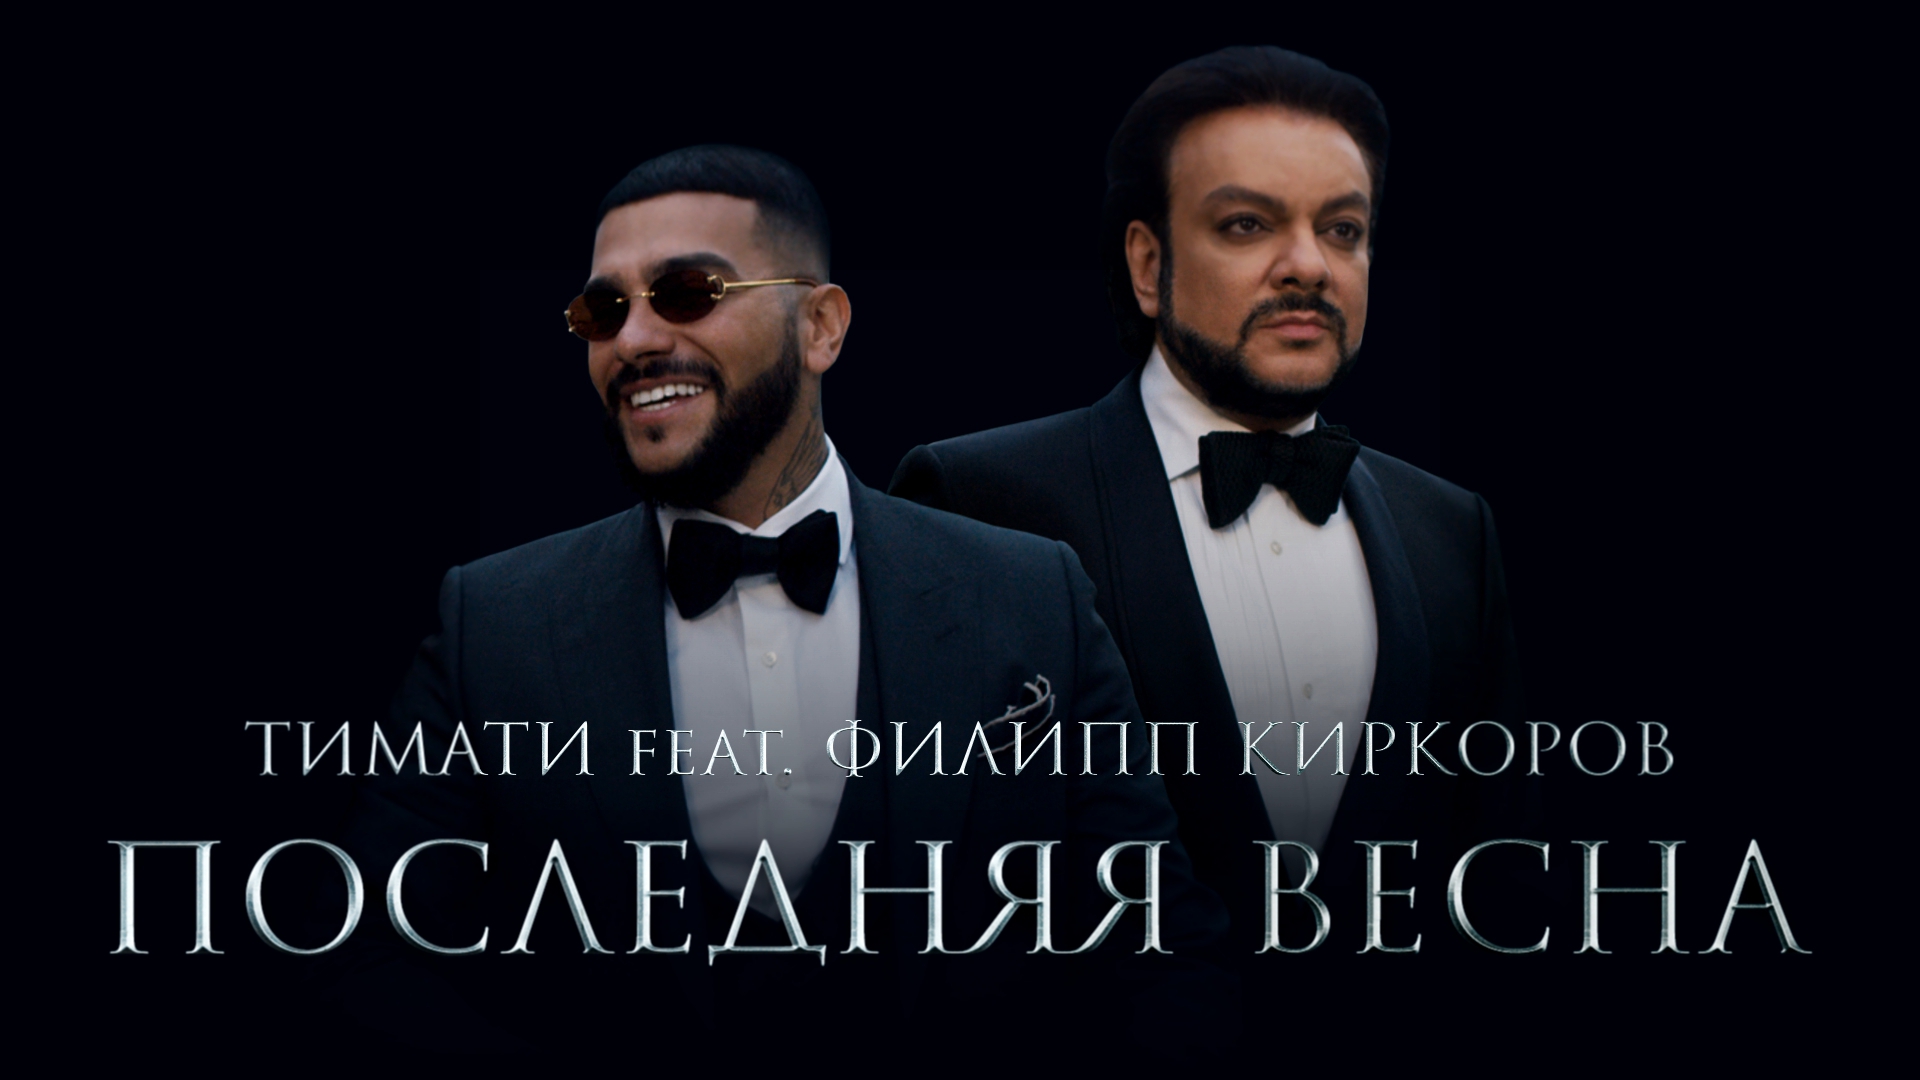 Тимати feat. Филипп Киркоров - Последняя весна премьера клипа, 2017 